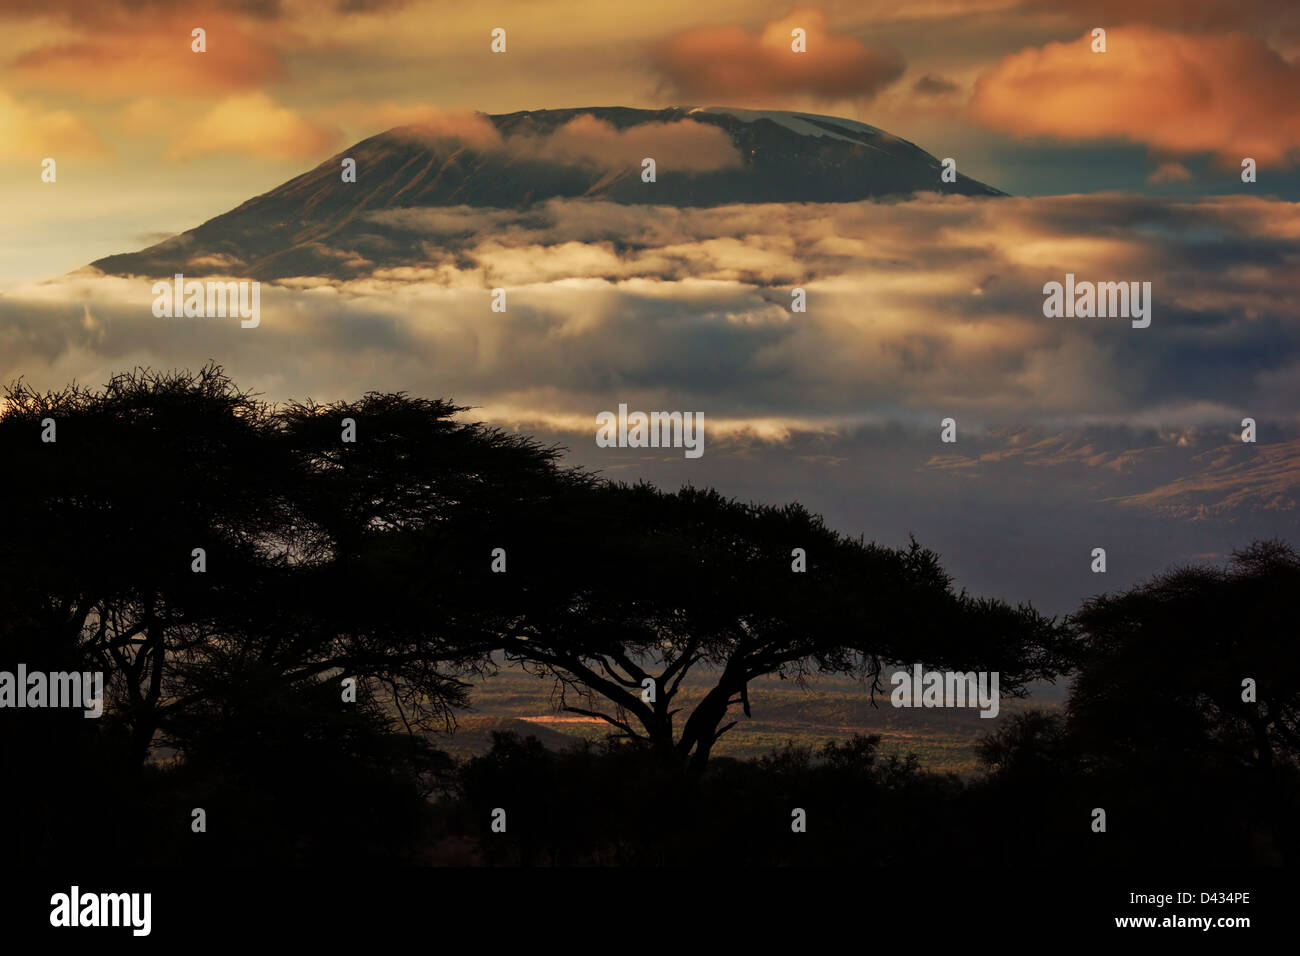 Paysage de l'Afrique - le mont Kilimanjaro et les nuages au coucher du soleil, la ligne de vue de paysage de savane à Amboseli, Kenya, Africa Banque D'Images